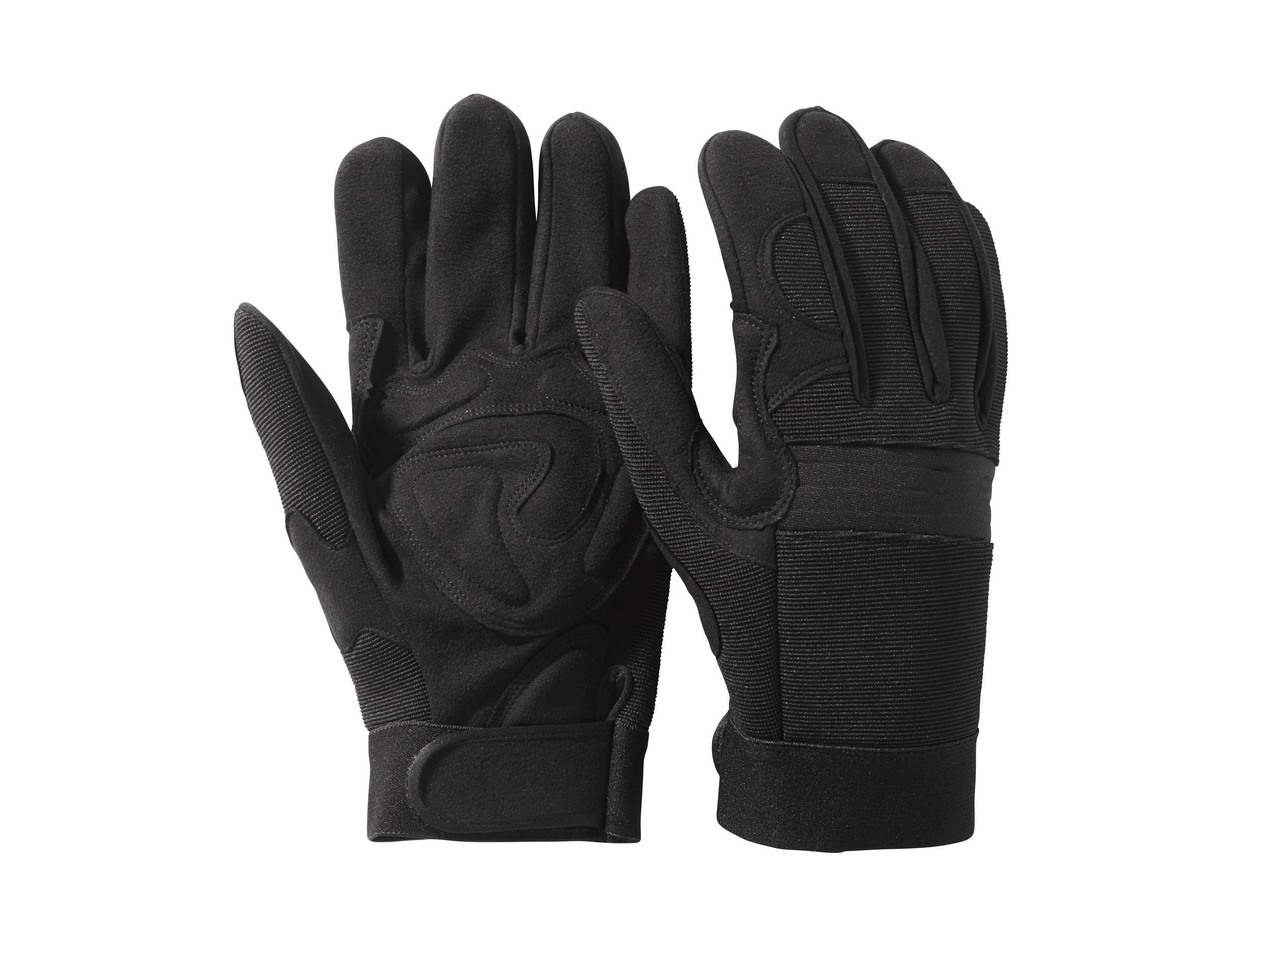 Men's Premium Work Gloves